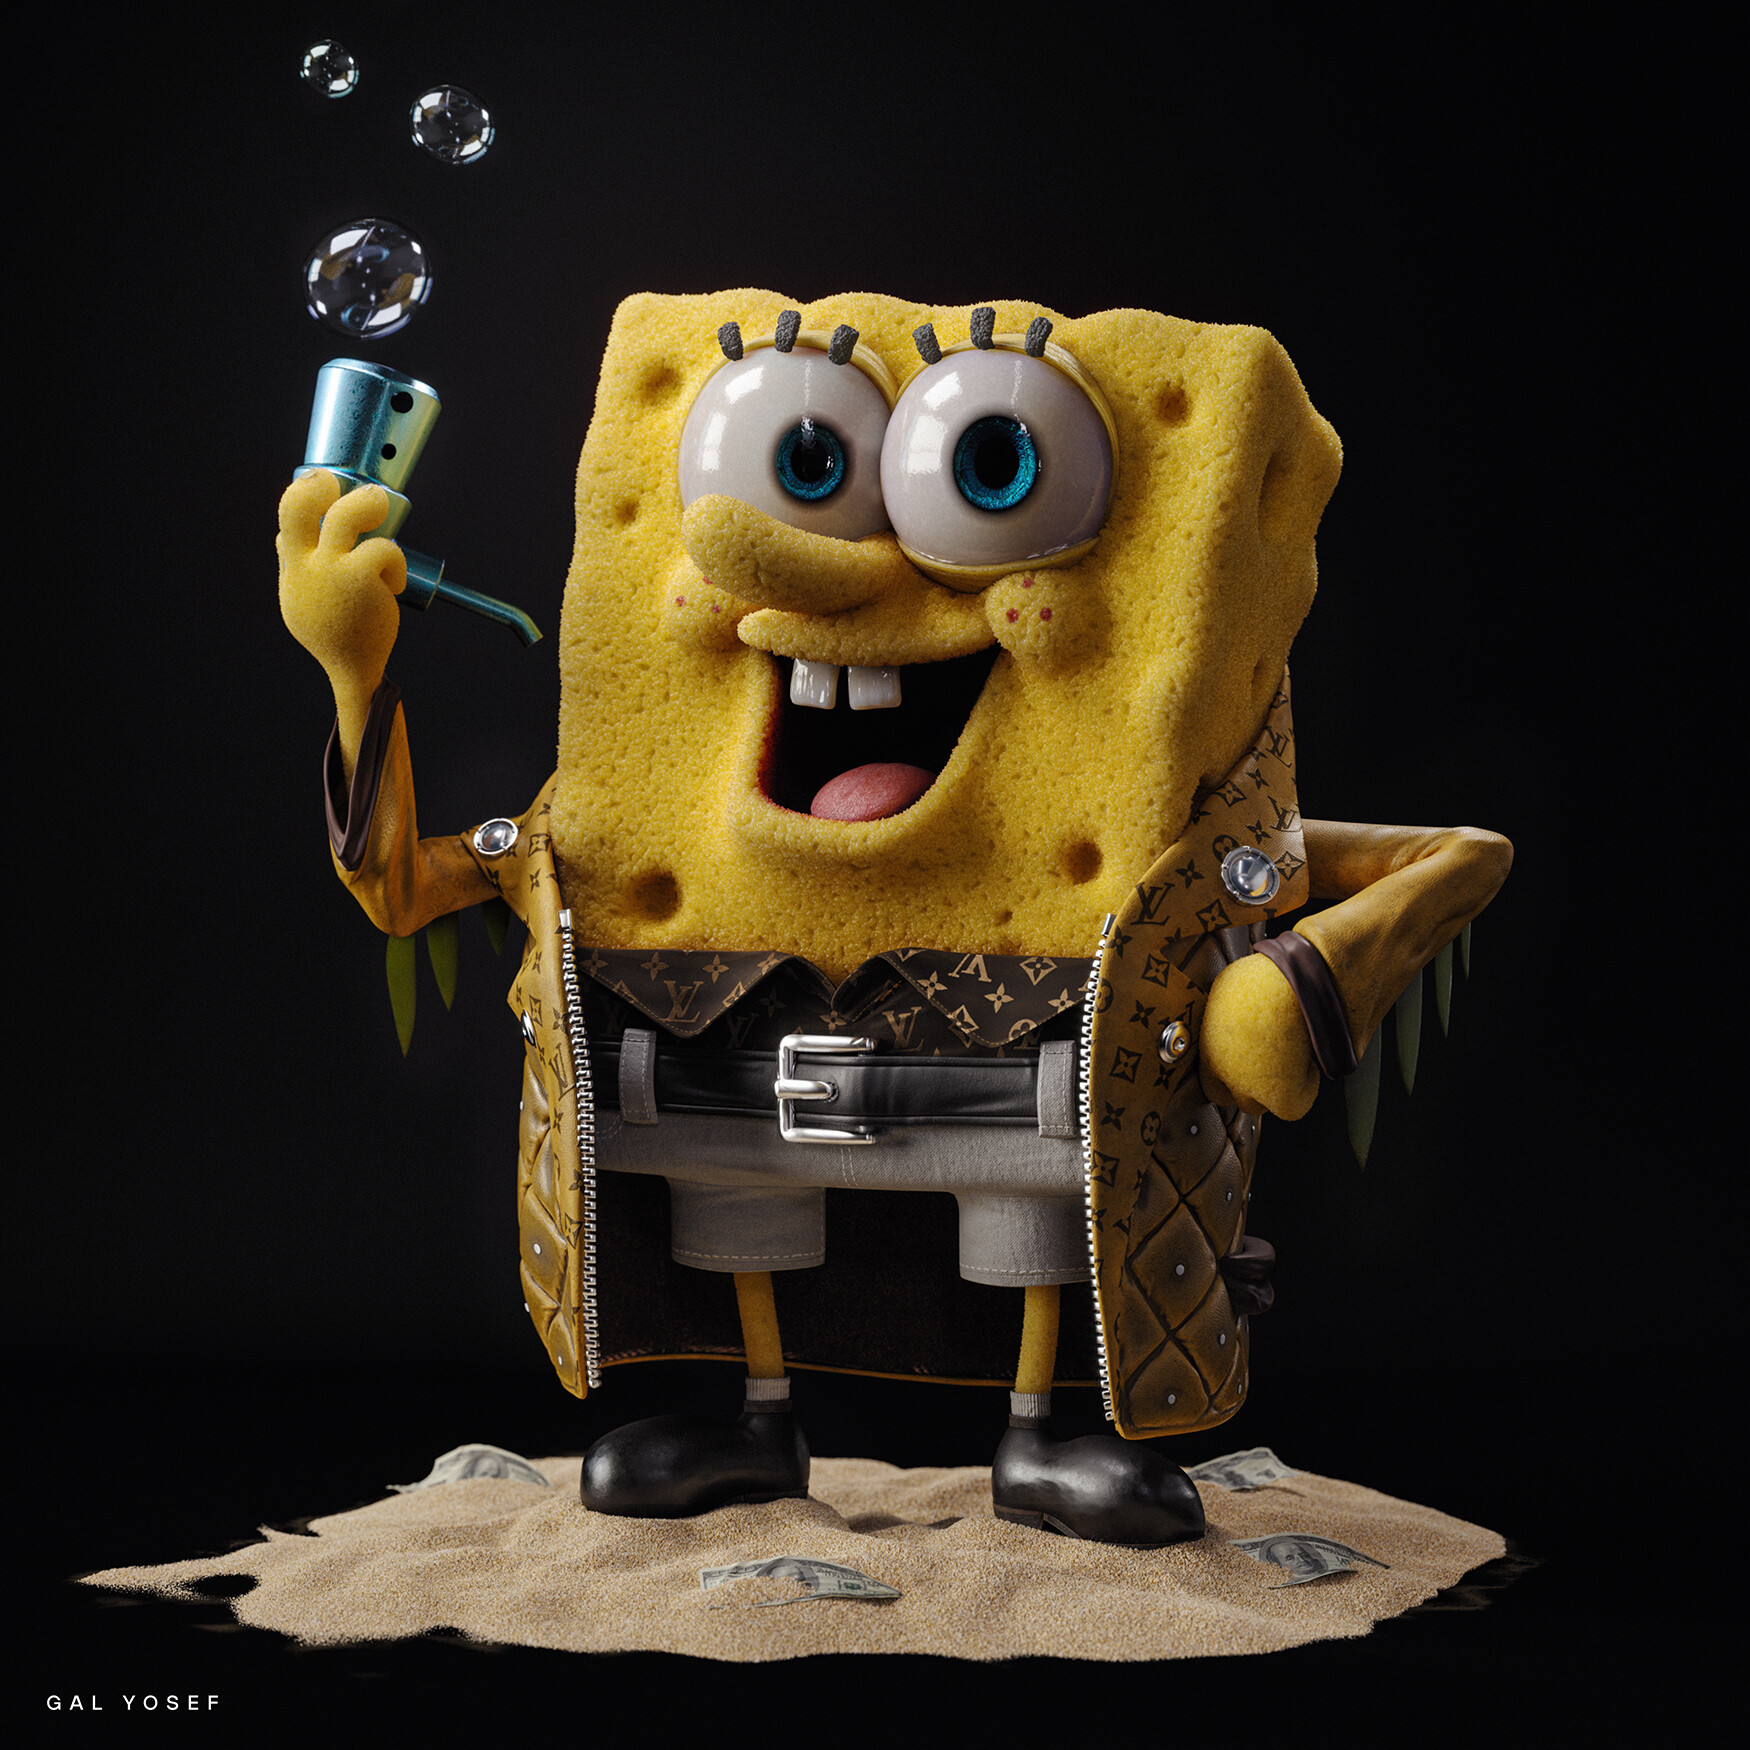 General 1750x1750 artwork digital art SpongeBob SquarePants cartoon bubbles